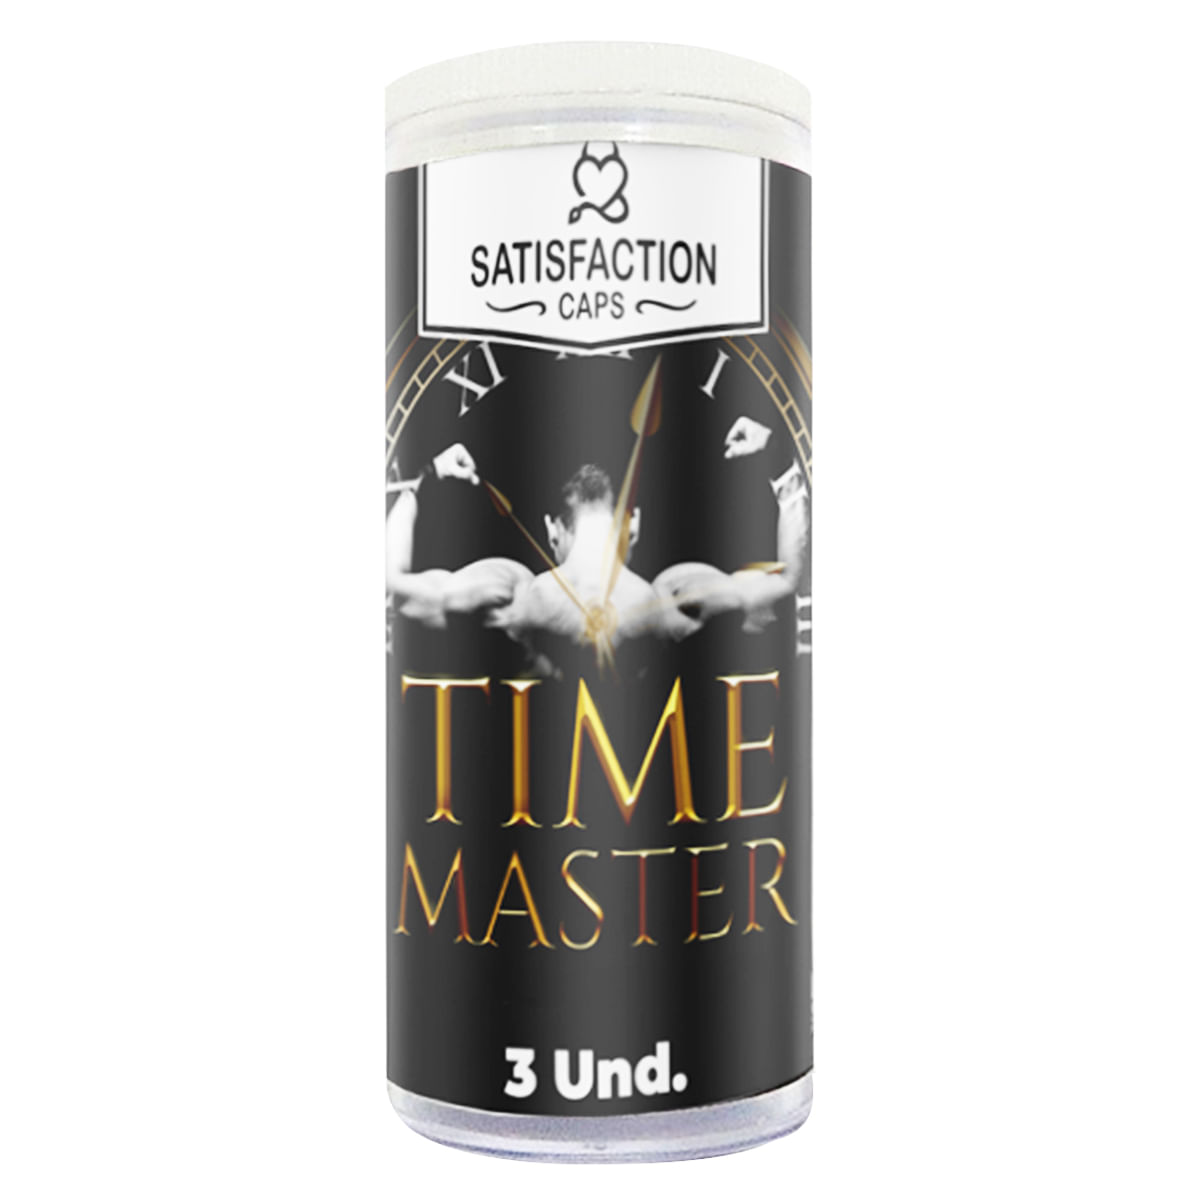 Time Master Bolinha com Óleo para Massagem Retardante 3 Unidades Satisfaction Caps